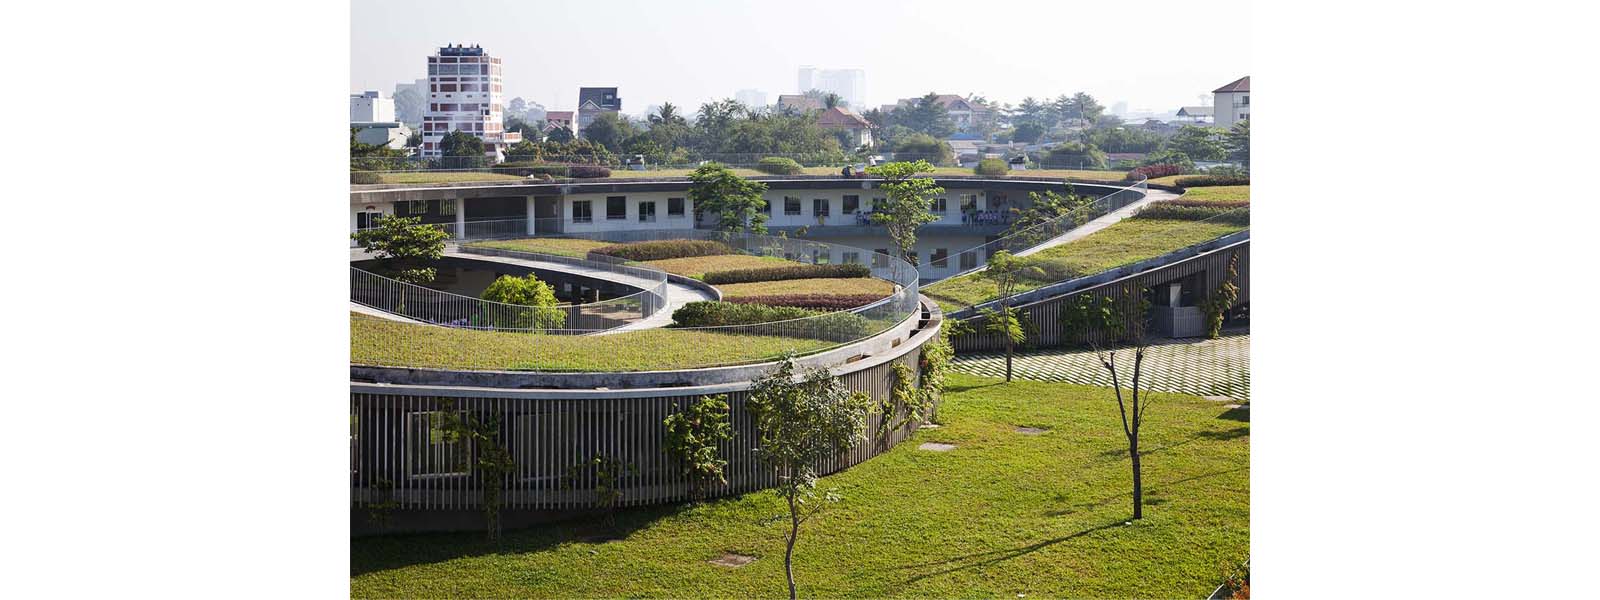 telhado-verde-com-horta-em-jardim-de-infância-no-vietnã-11